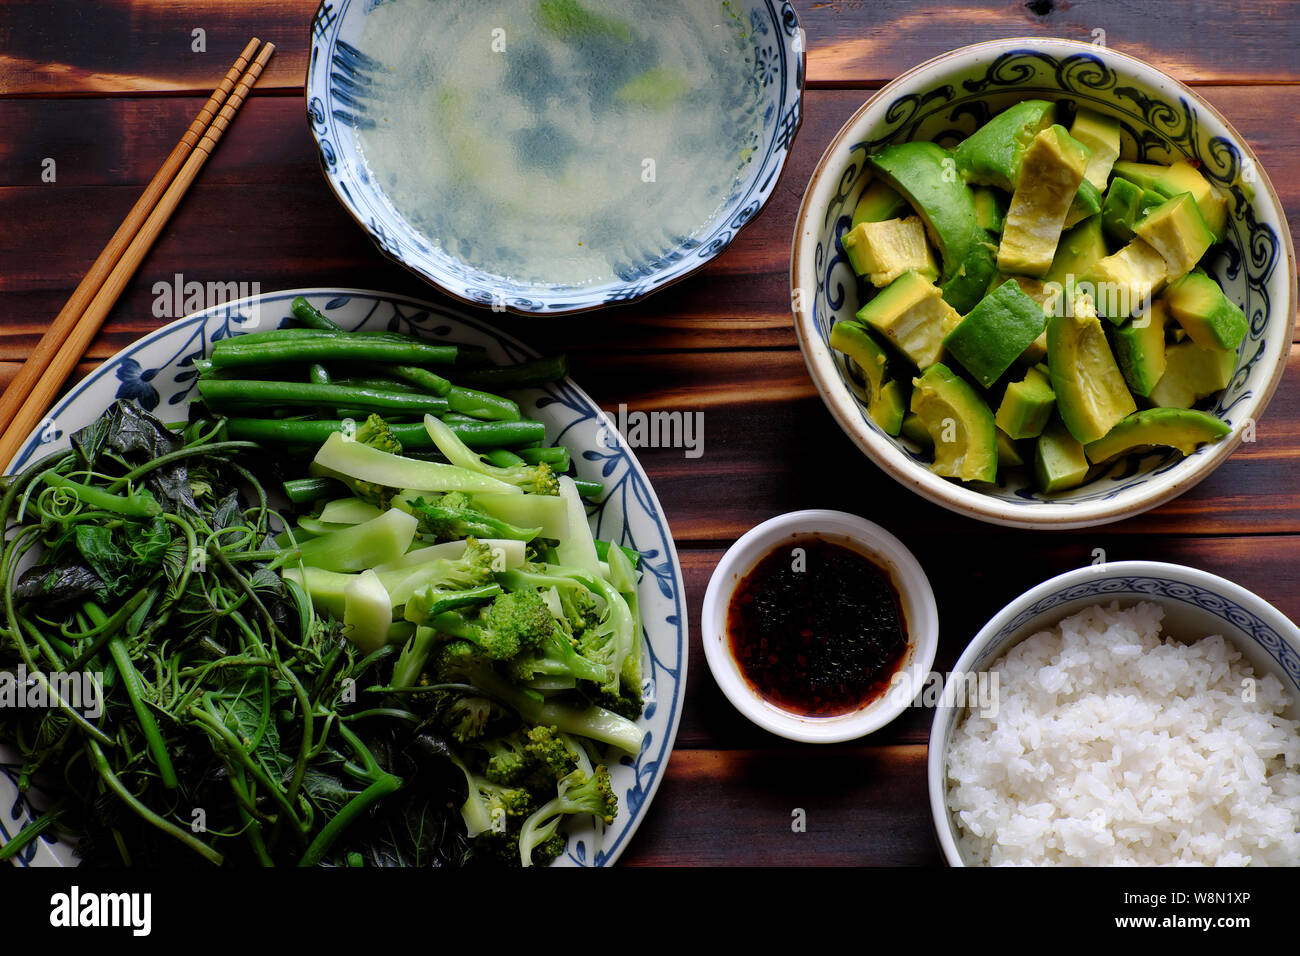 Vue de dessus repas végétarien vietnamien, des légumes bouillis avec string bean, le brocoli, les bourgeons de patate douce, salade d'avocat avec la sauce de soja et de riz, une alimentation non Banque D'Images